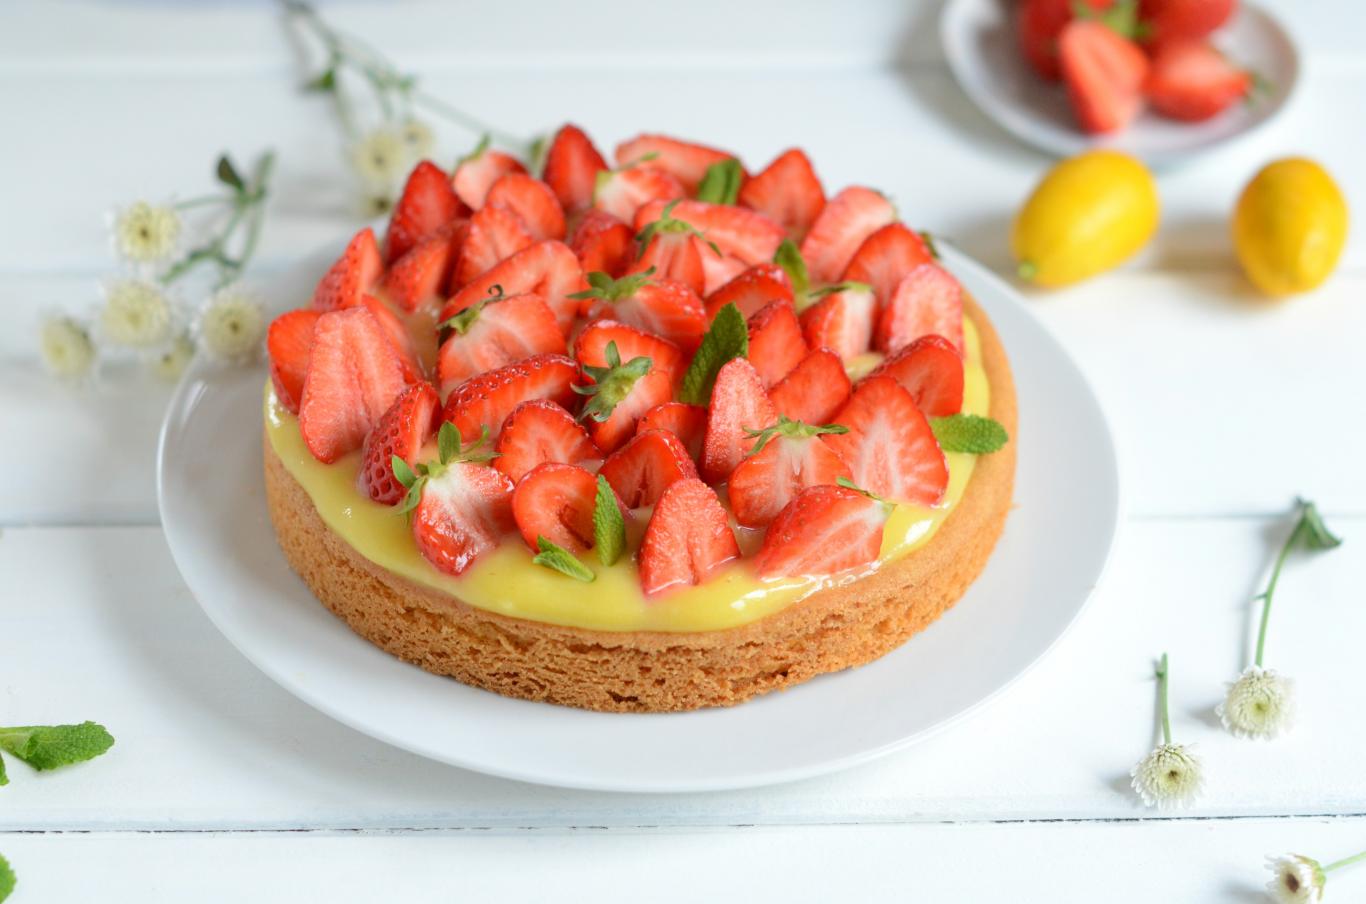 “la pâte est divine !” : testez cette recette de tarte au citron et aux fraises notée 4,7/5 par les lecteurs de 750g